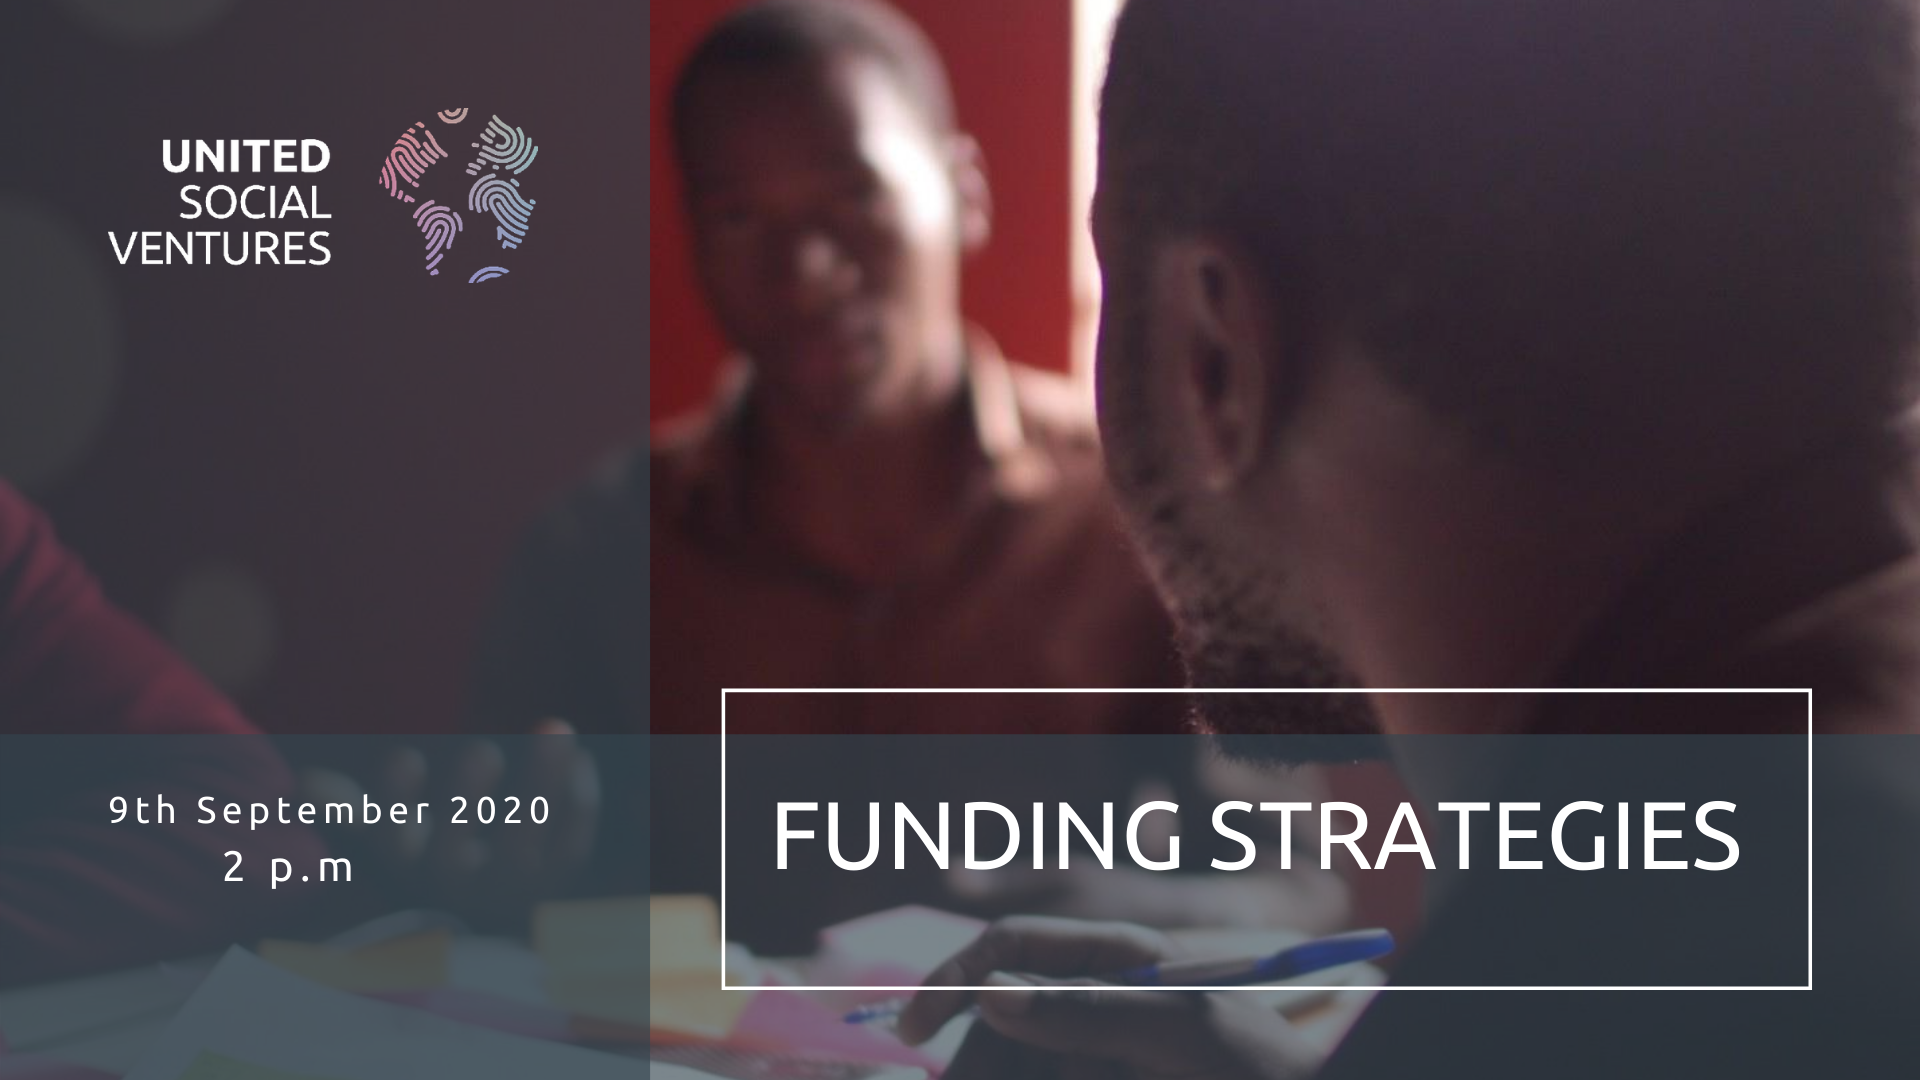 Funding strategies